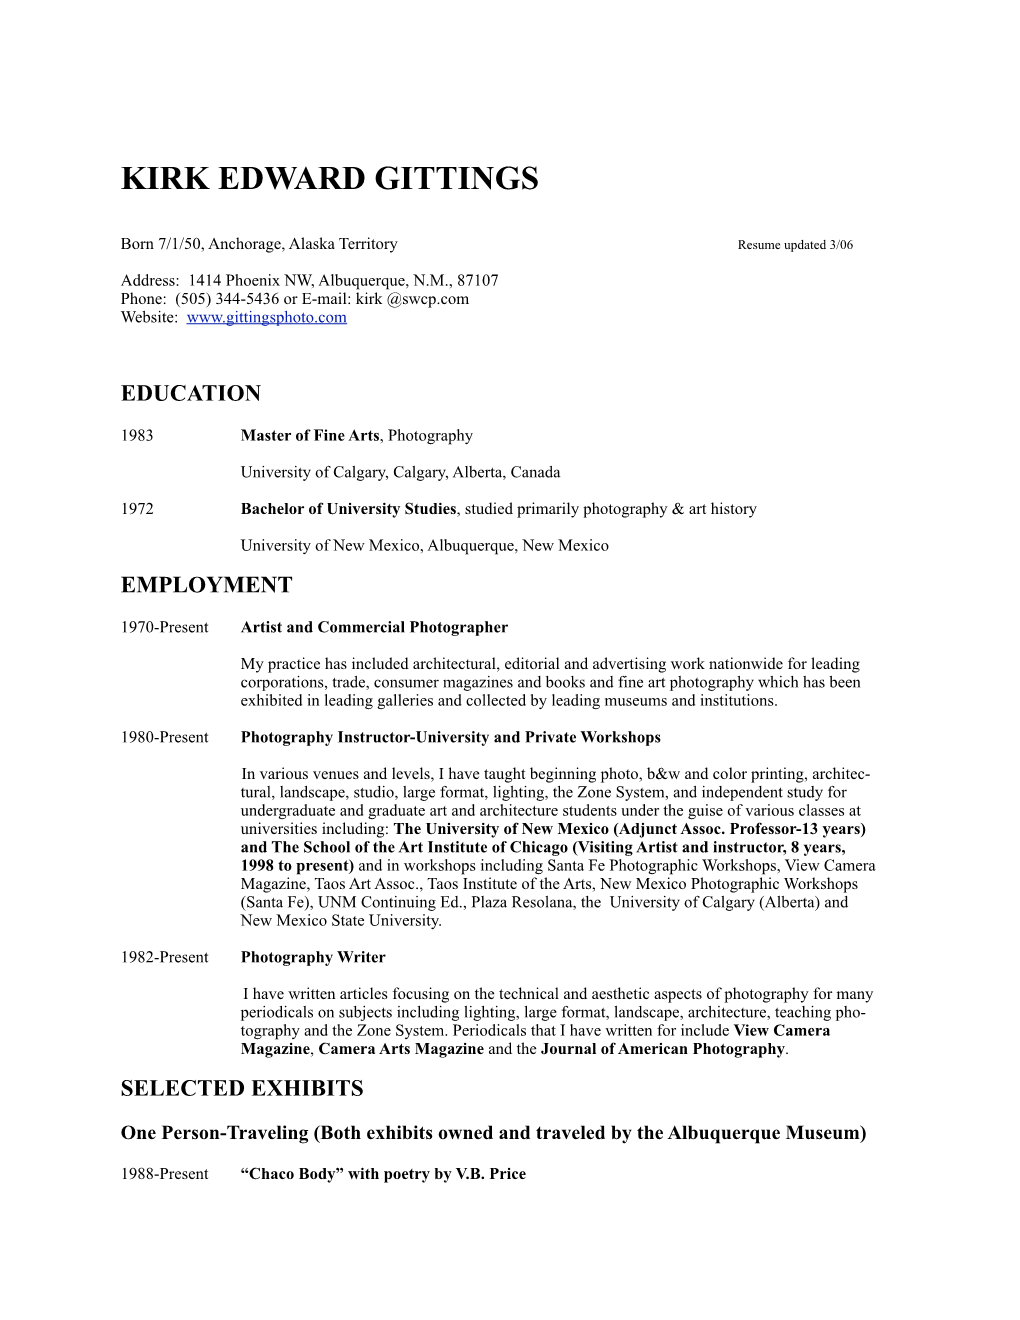 Kirk Edward Gittings